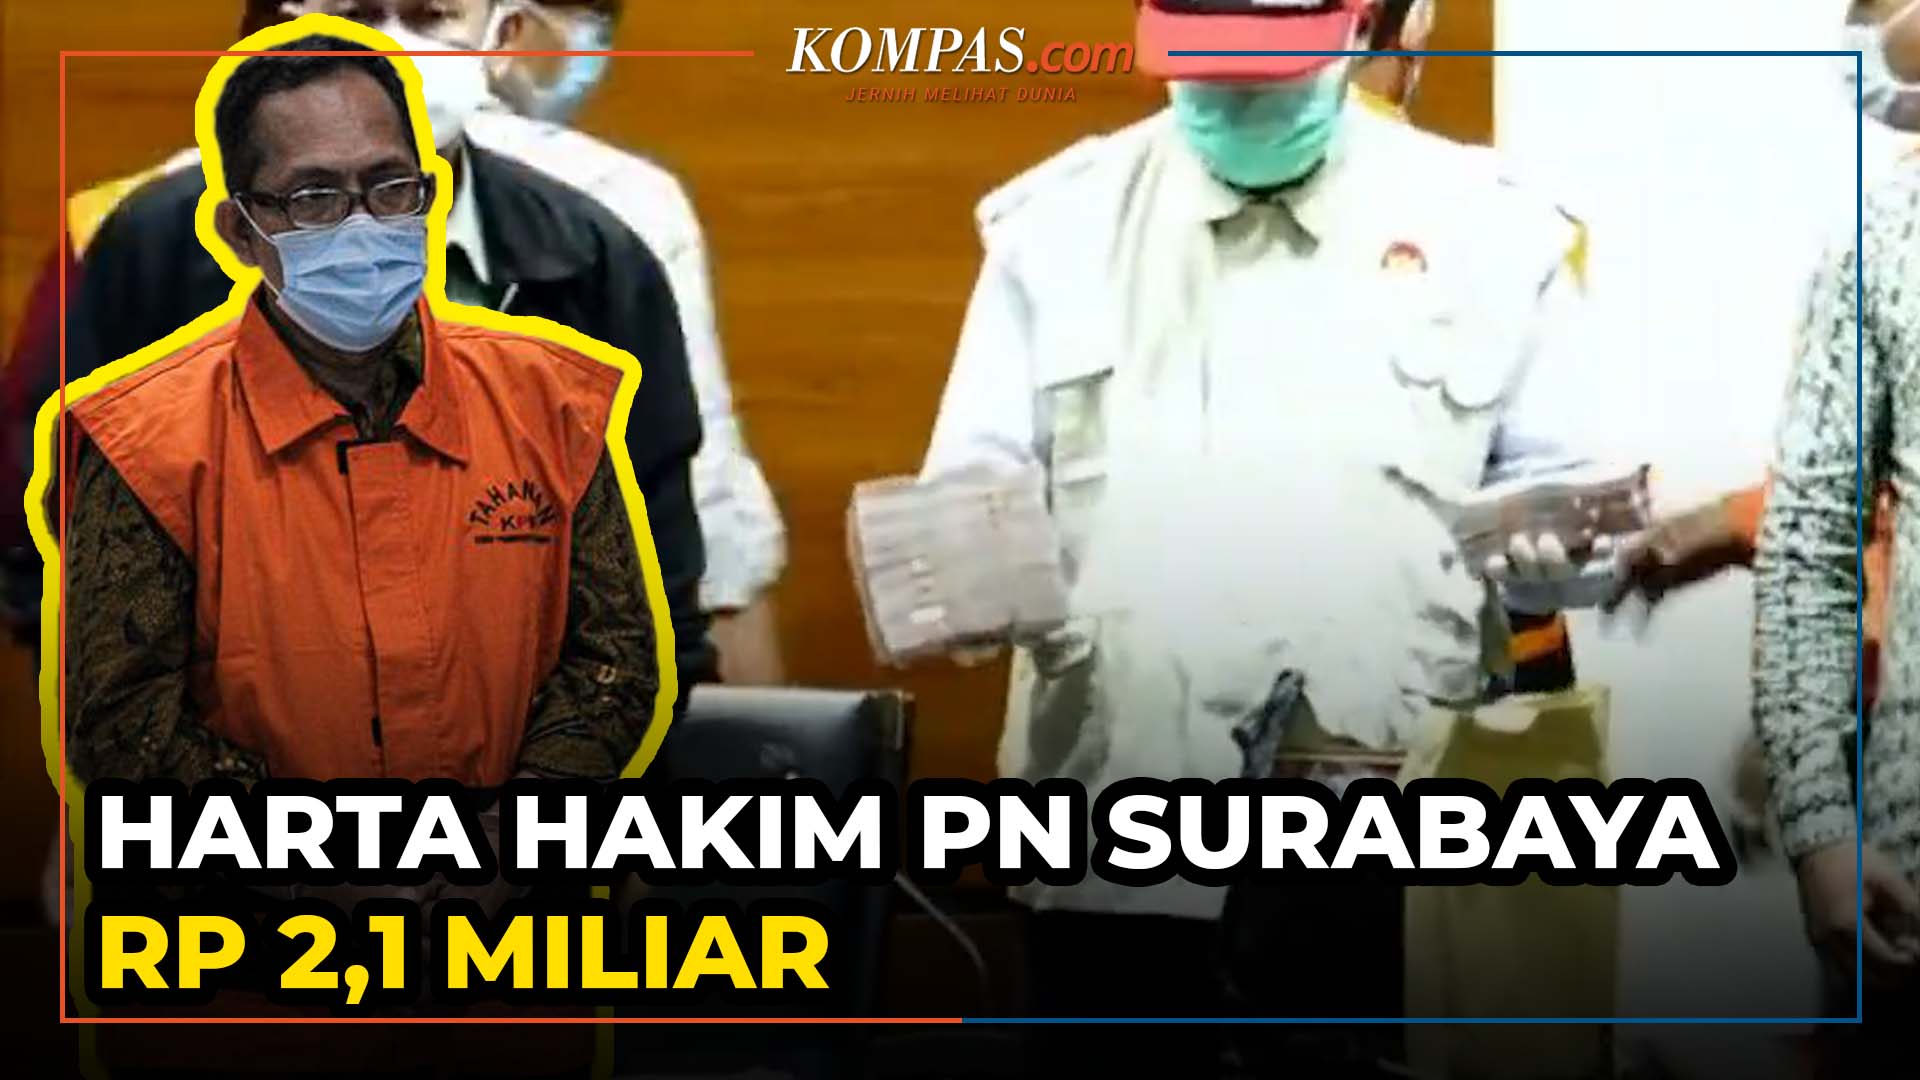 Jadi Tersangka KPK, Hakim PN Surabaya Itong Isnaini Hidayat Punya Harta Bernilai Rp 2,1 Miliar